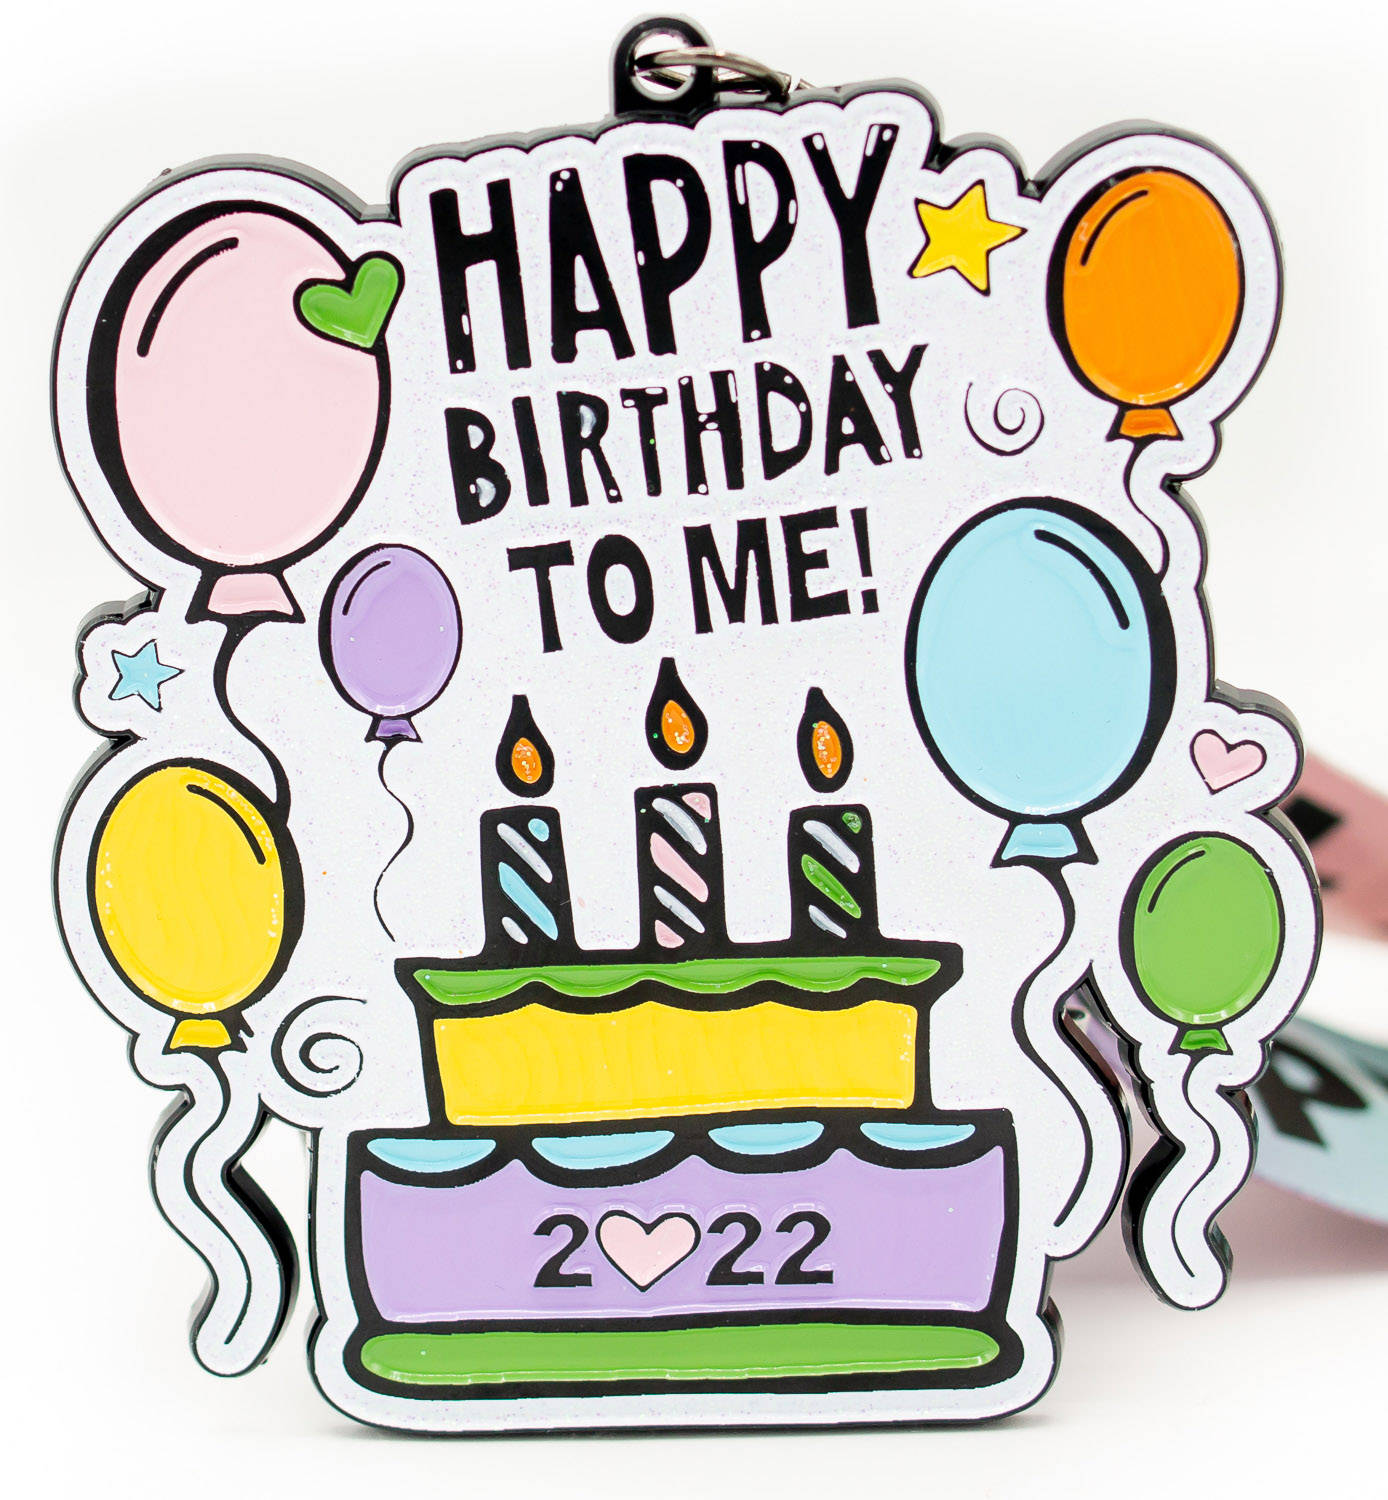 Happy Birthday To Me 2022